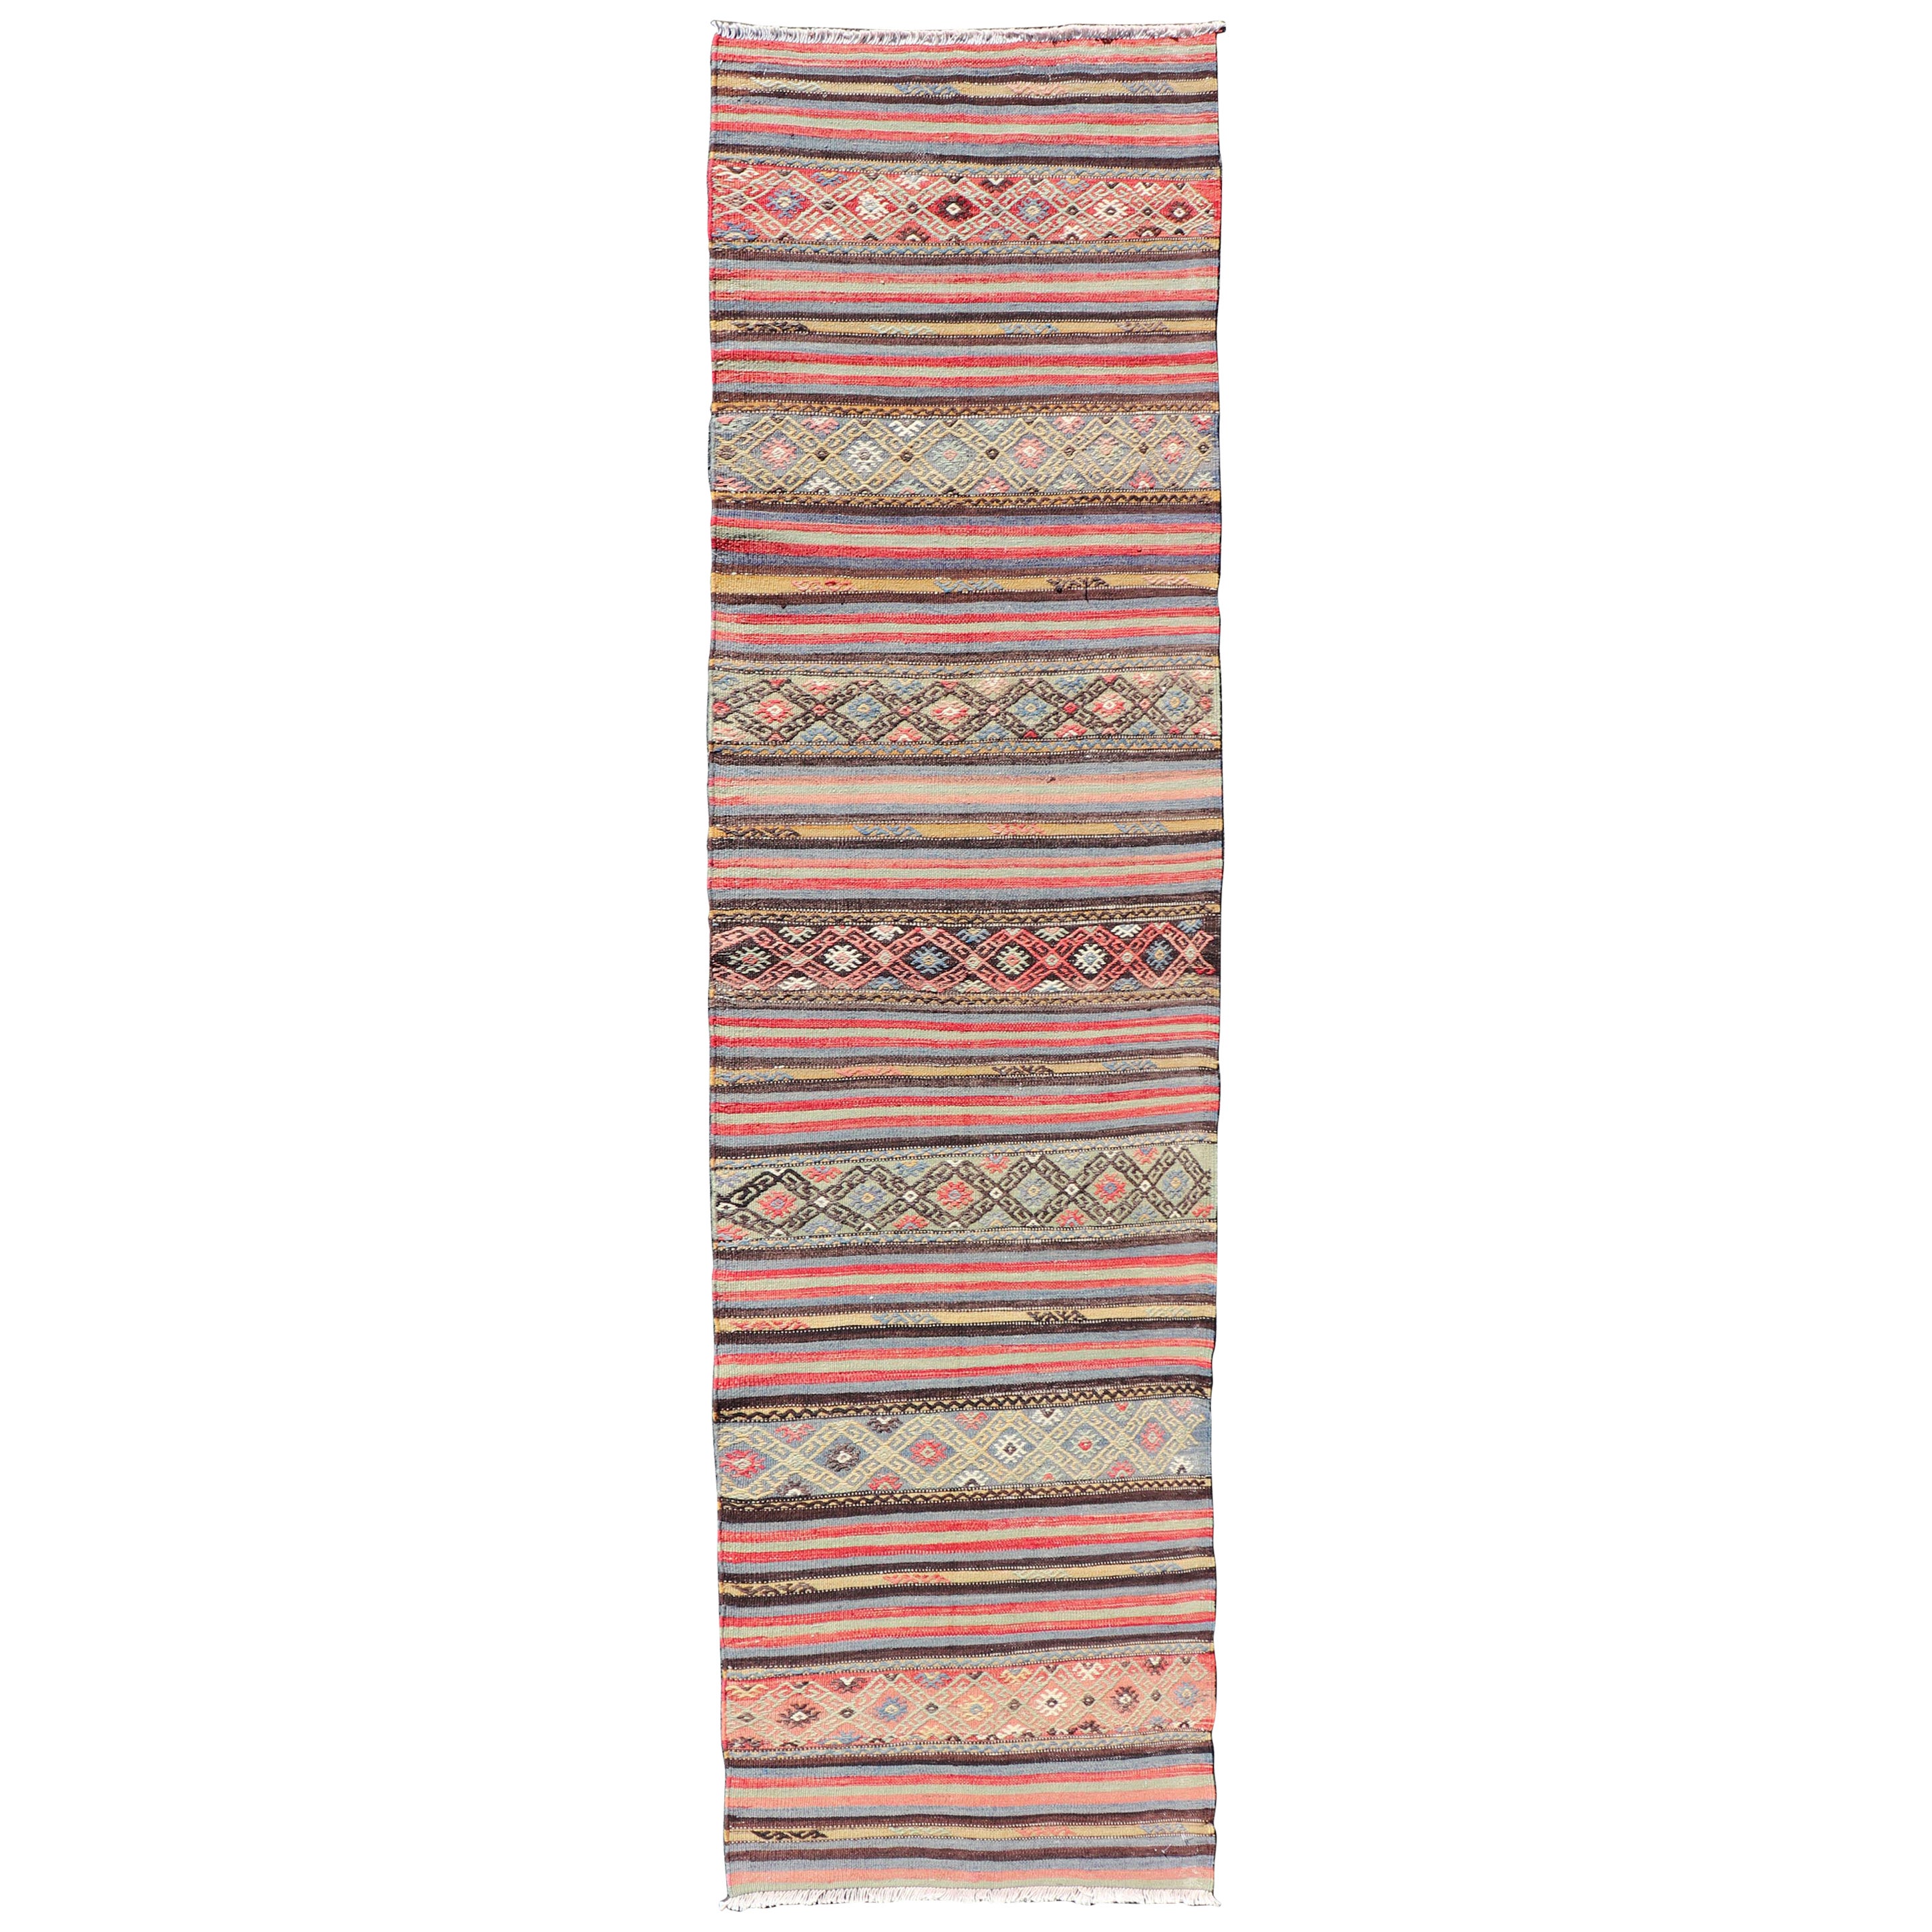 Kilim turc vintage à rayures horizontales et motifs tribaux dans des tons vifs